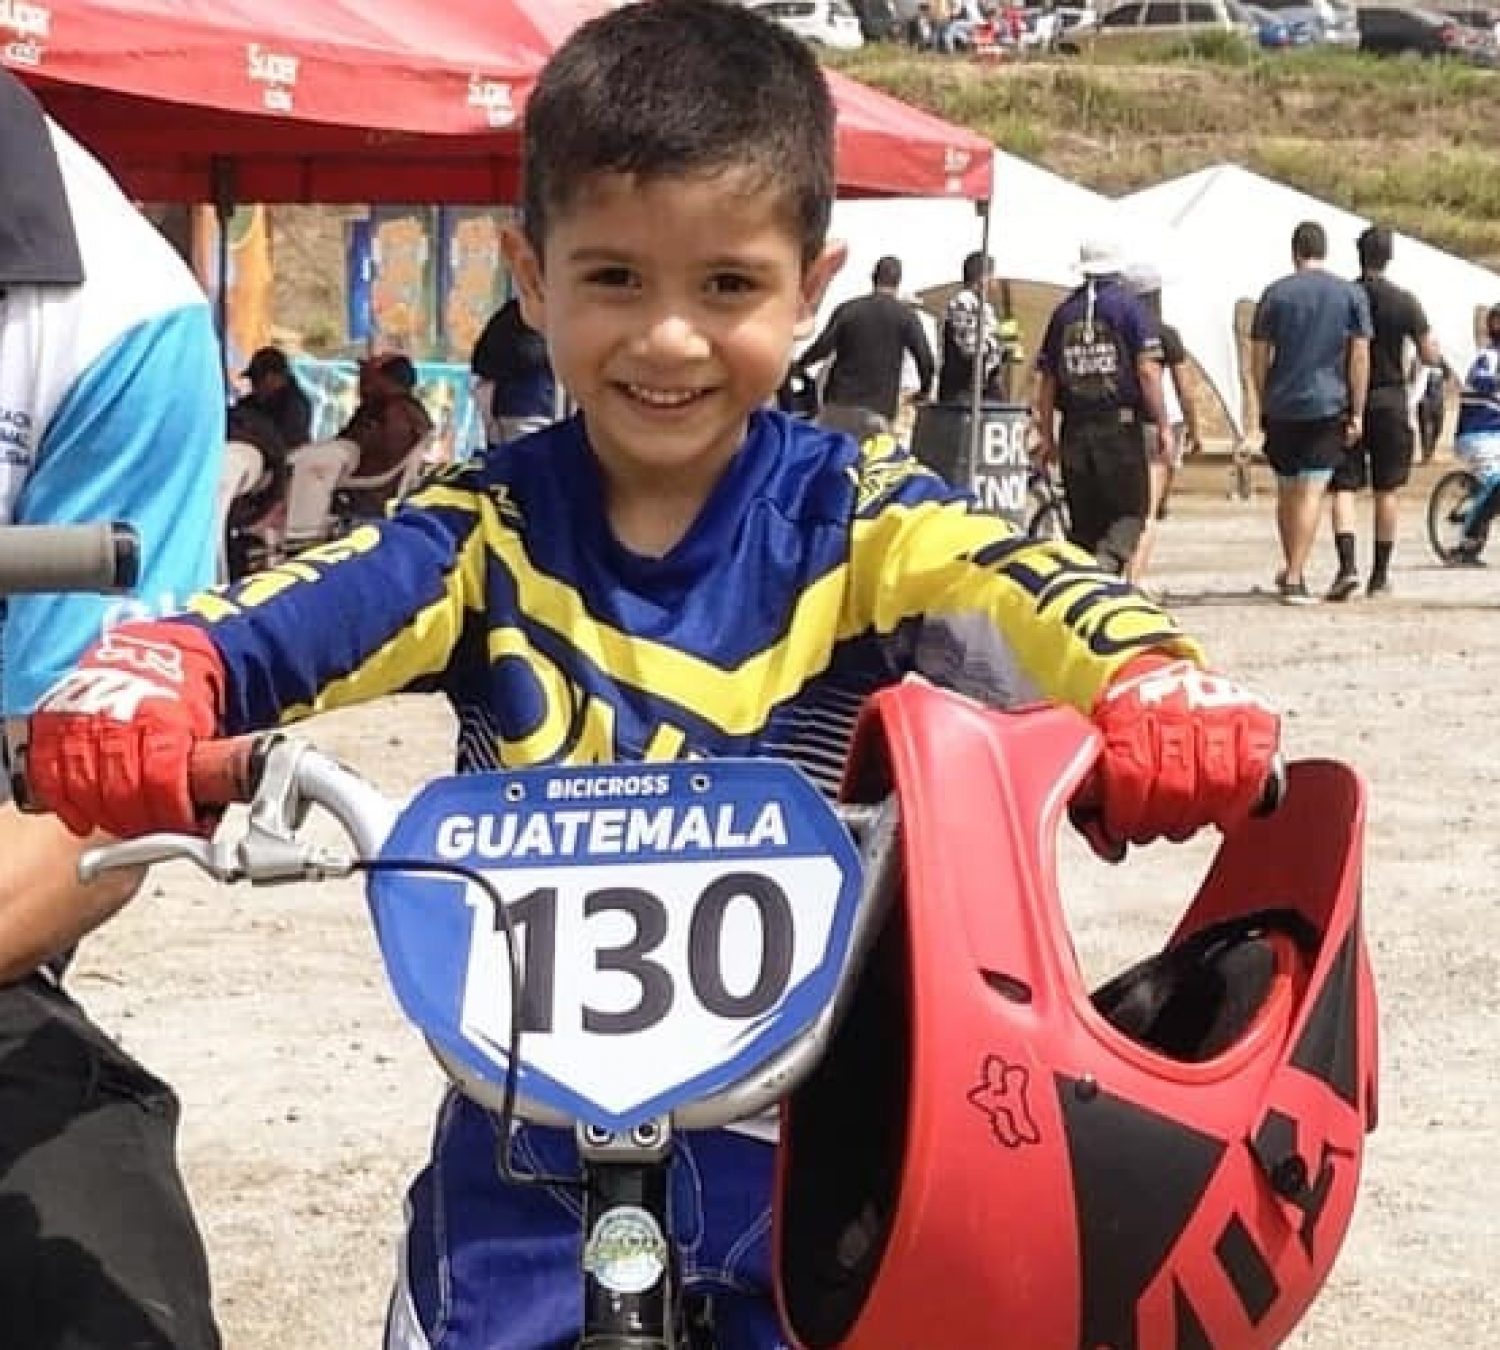 Mateo obtuvo 4to lugar en la Competencia Internacional C1 de BMX